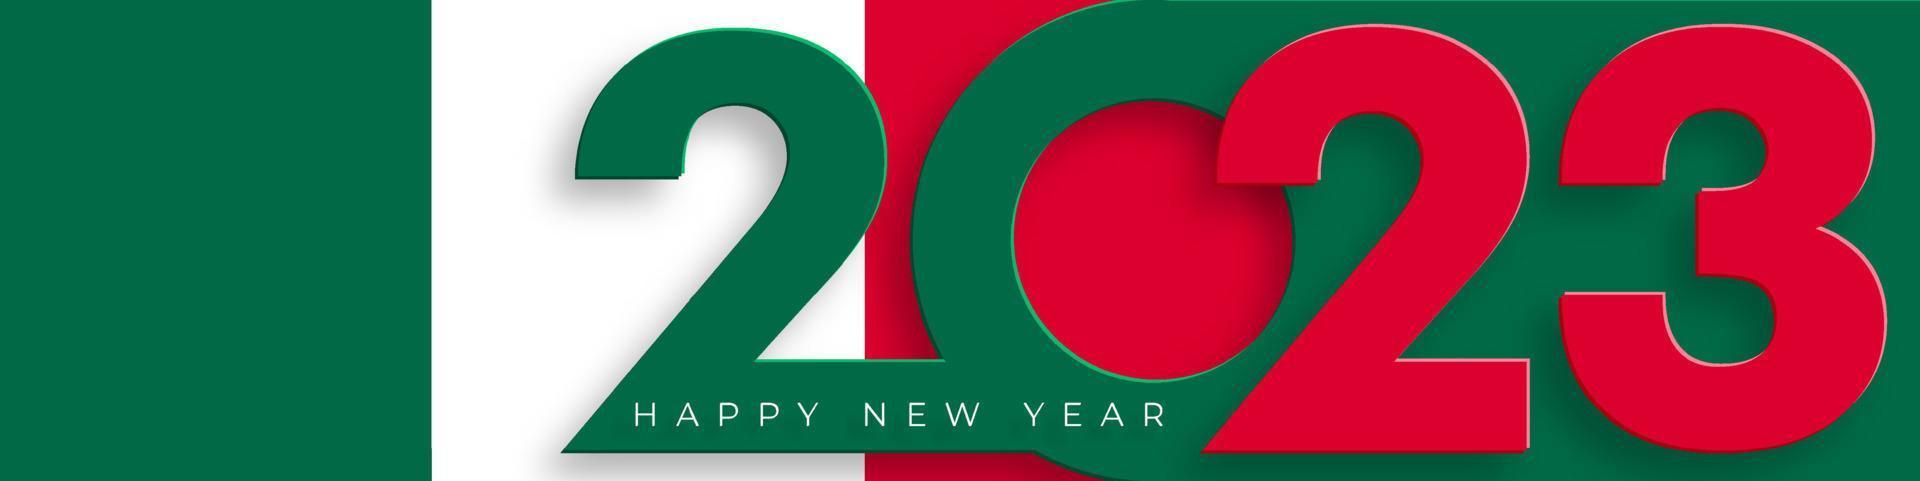 feliz año nuevo 2023, patrón festivo con concepto de bandera de méxico vector